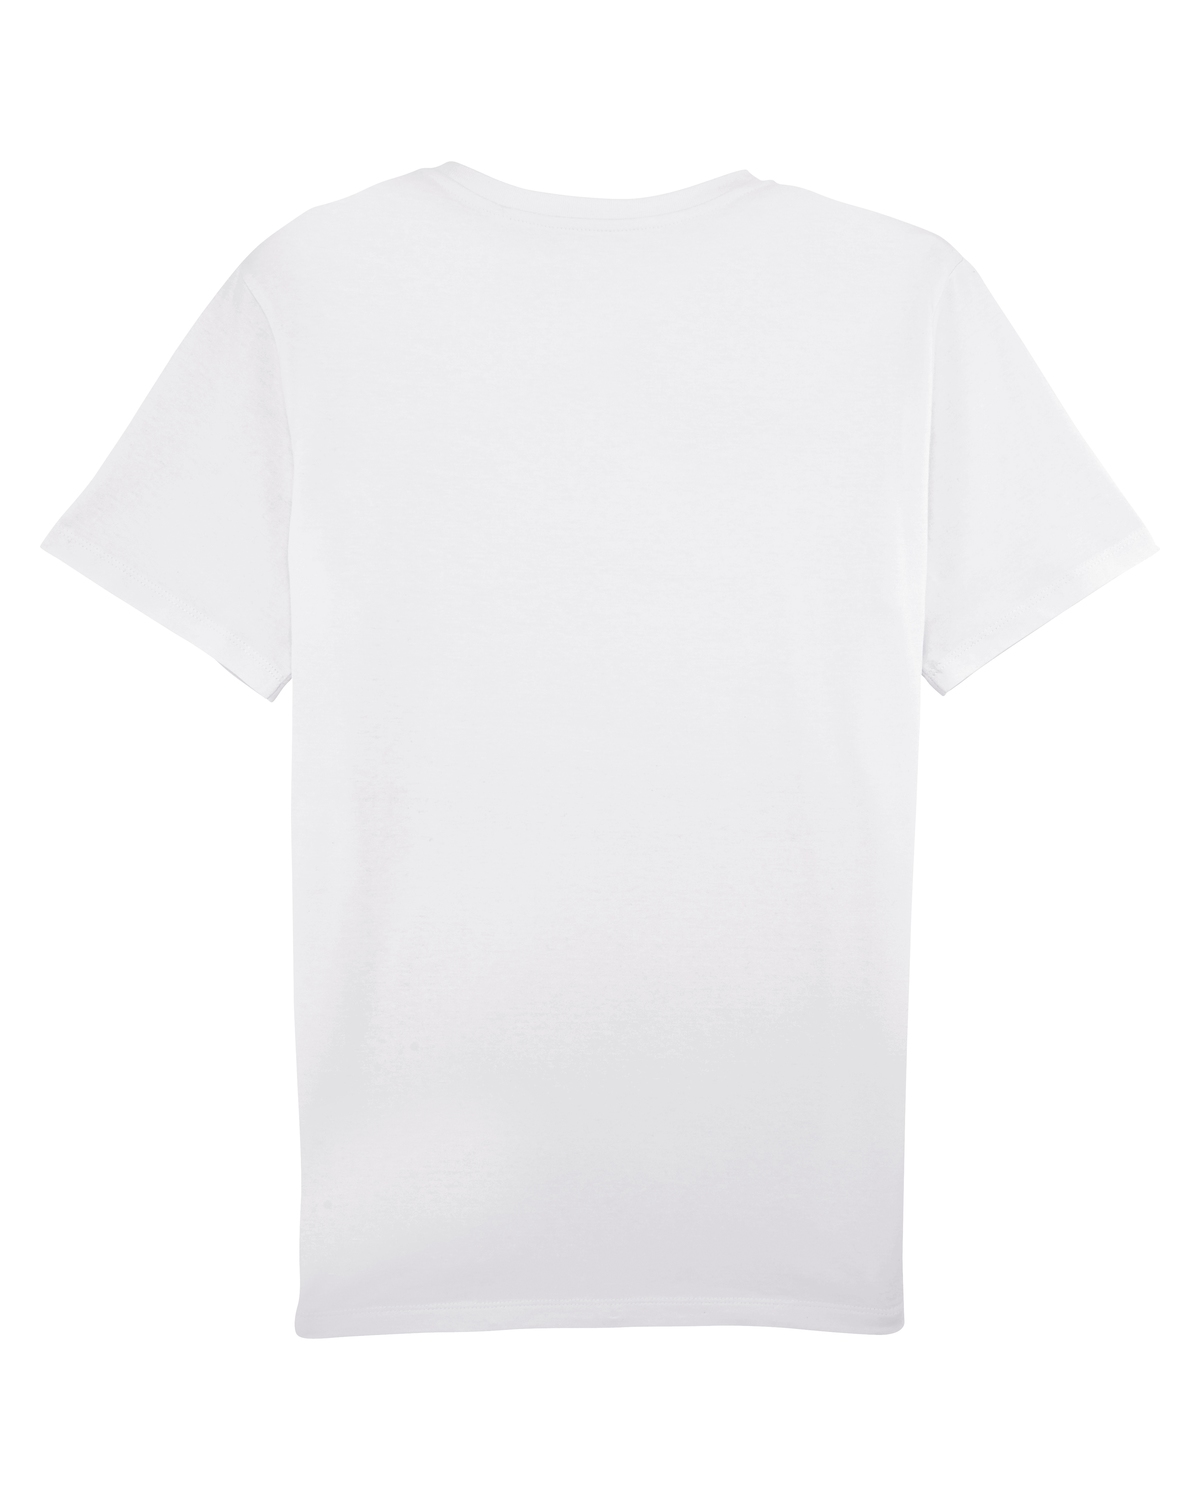 Stanley Leads T-Shirt FairWear White 3XL